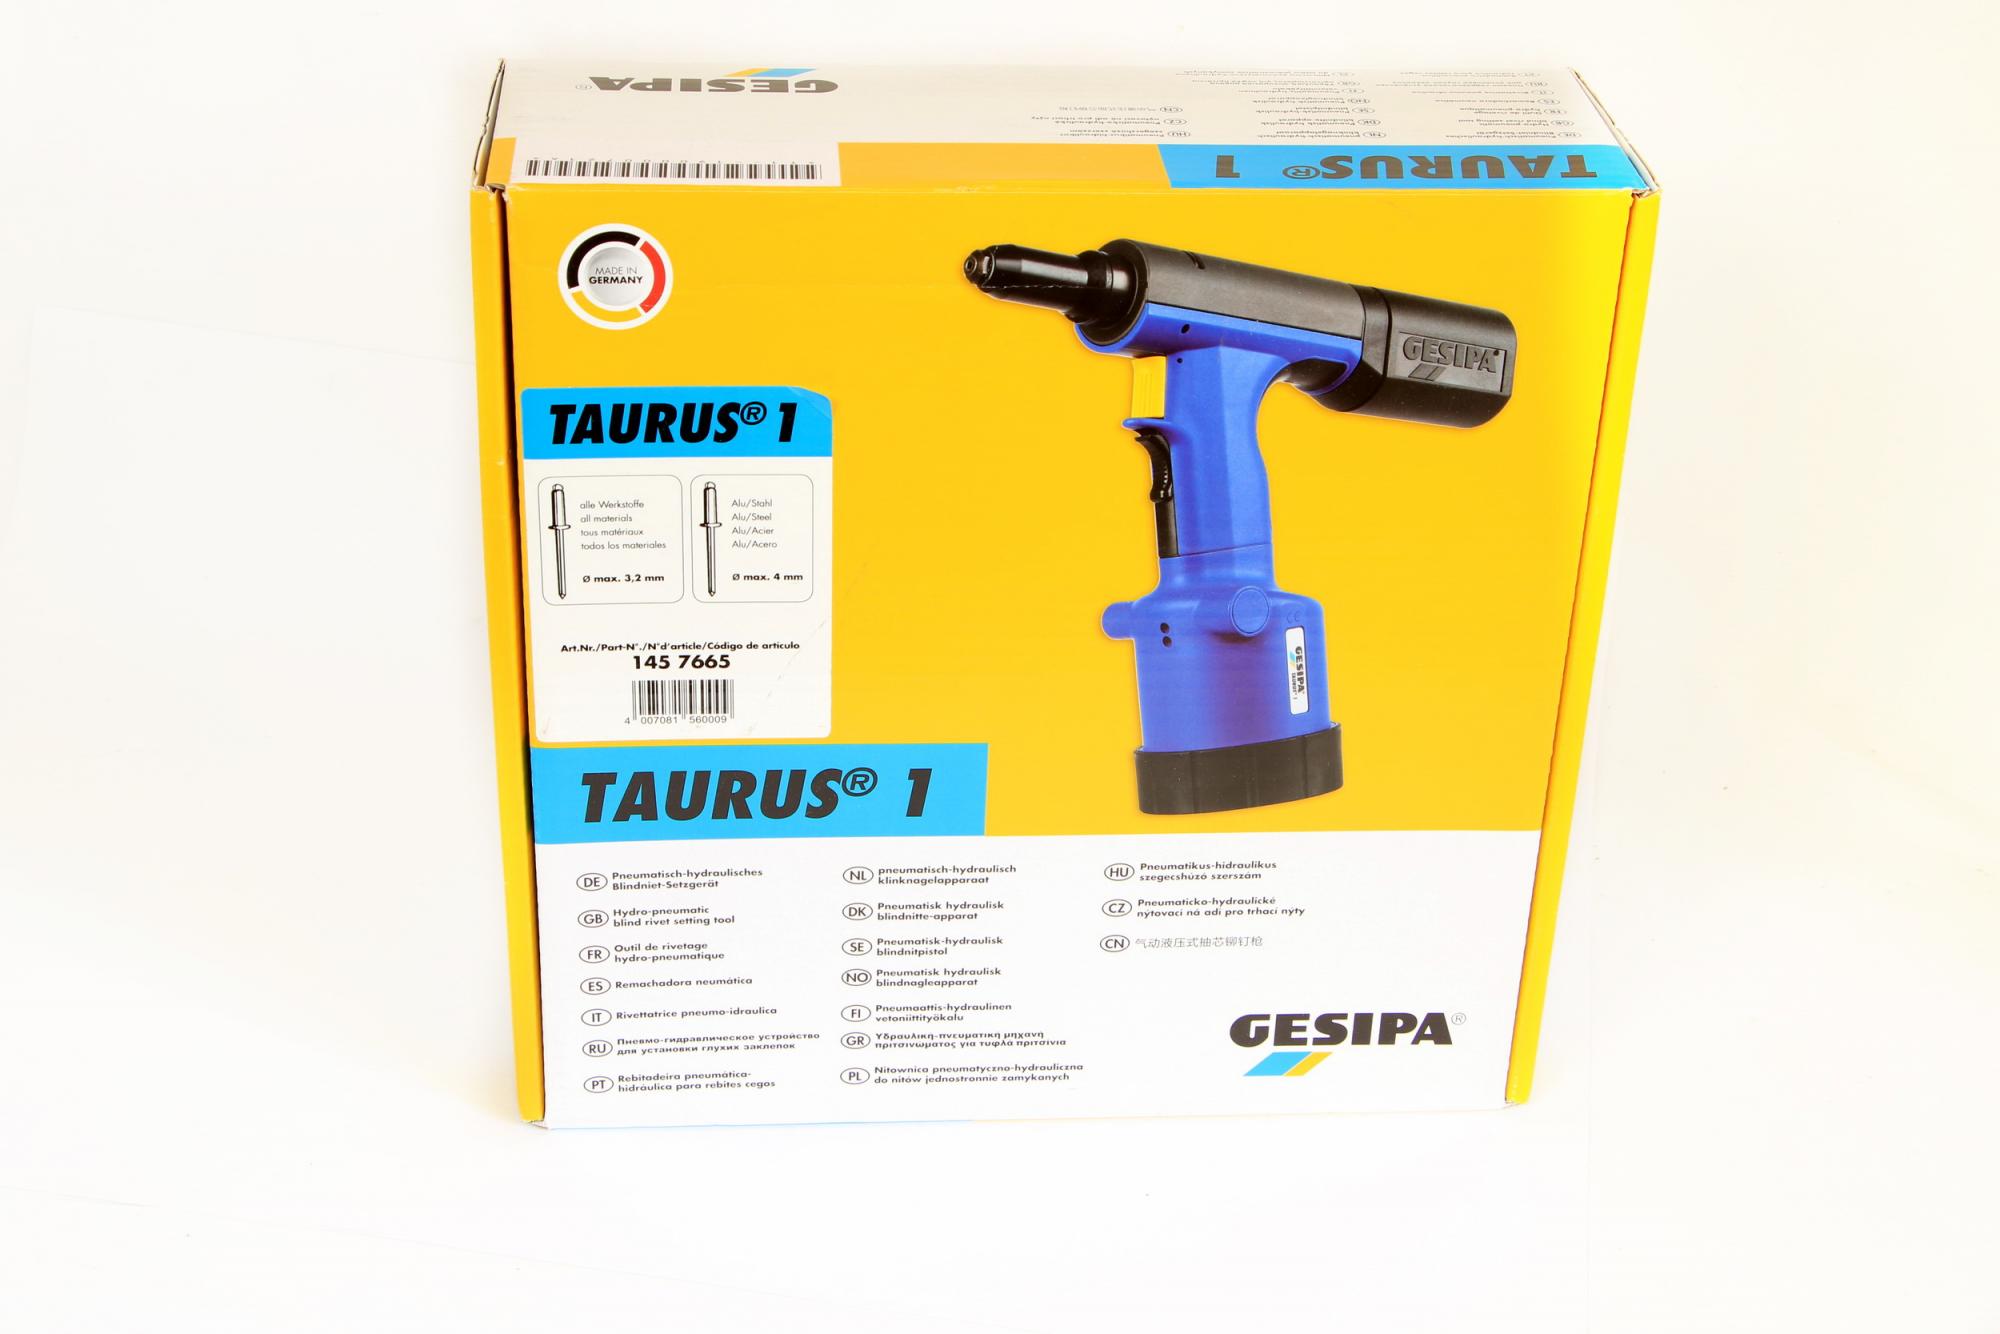 Gesipa Taurus 1 Druckluft Blindnietpistole 4200 N Nietgerät Setzgerät 1457665